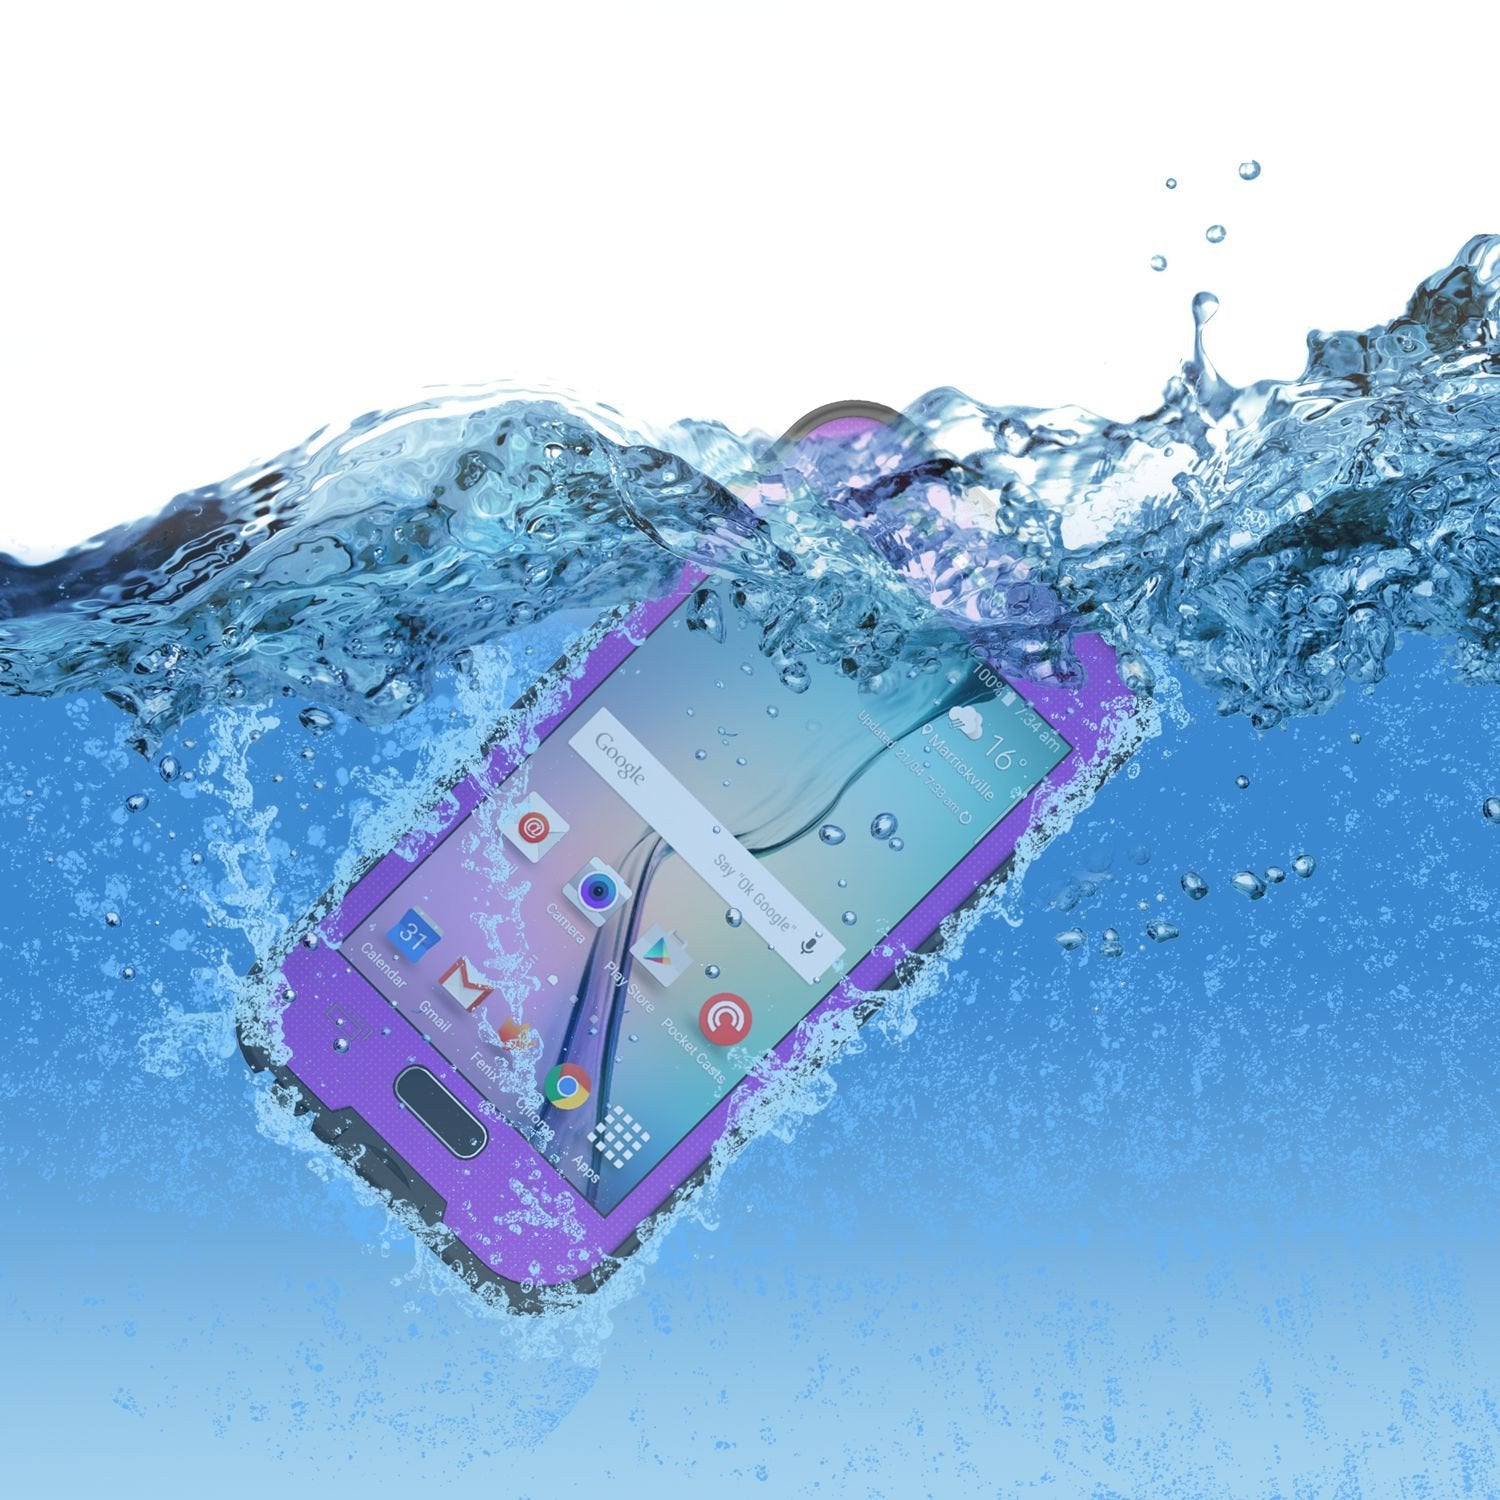 Galaxy S6 Waterproof Case, PunkCase SpikeStar Purple Water/Shock/Dirt/Snow Proof | Lifetime Warranty - PunkCase NZ